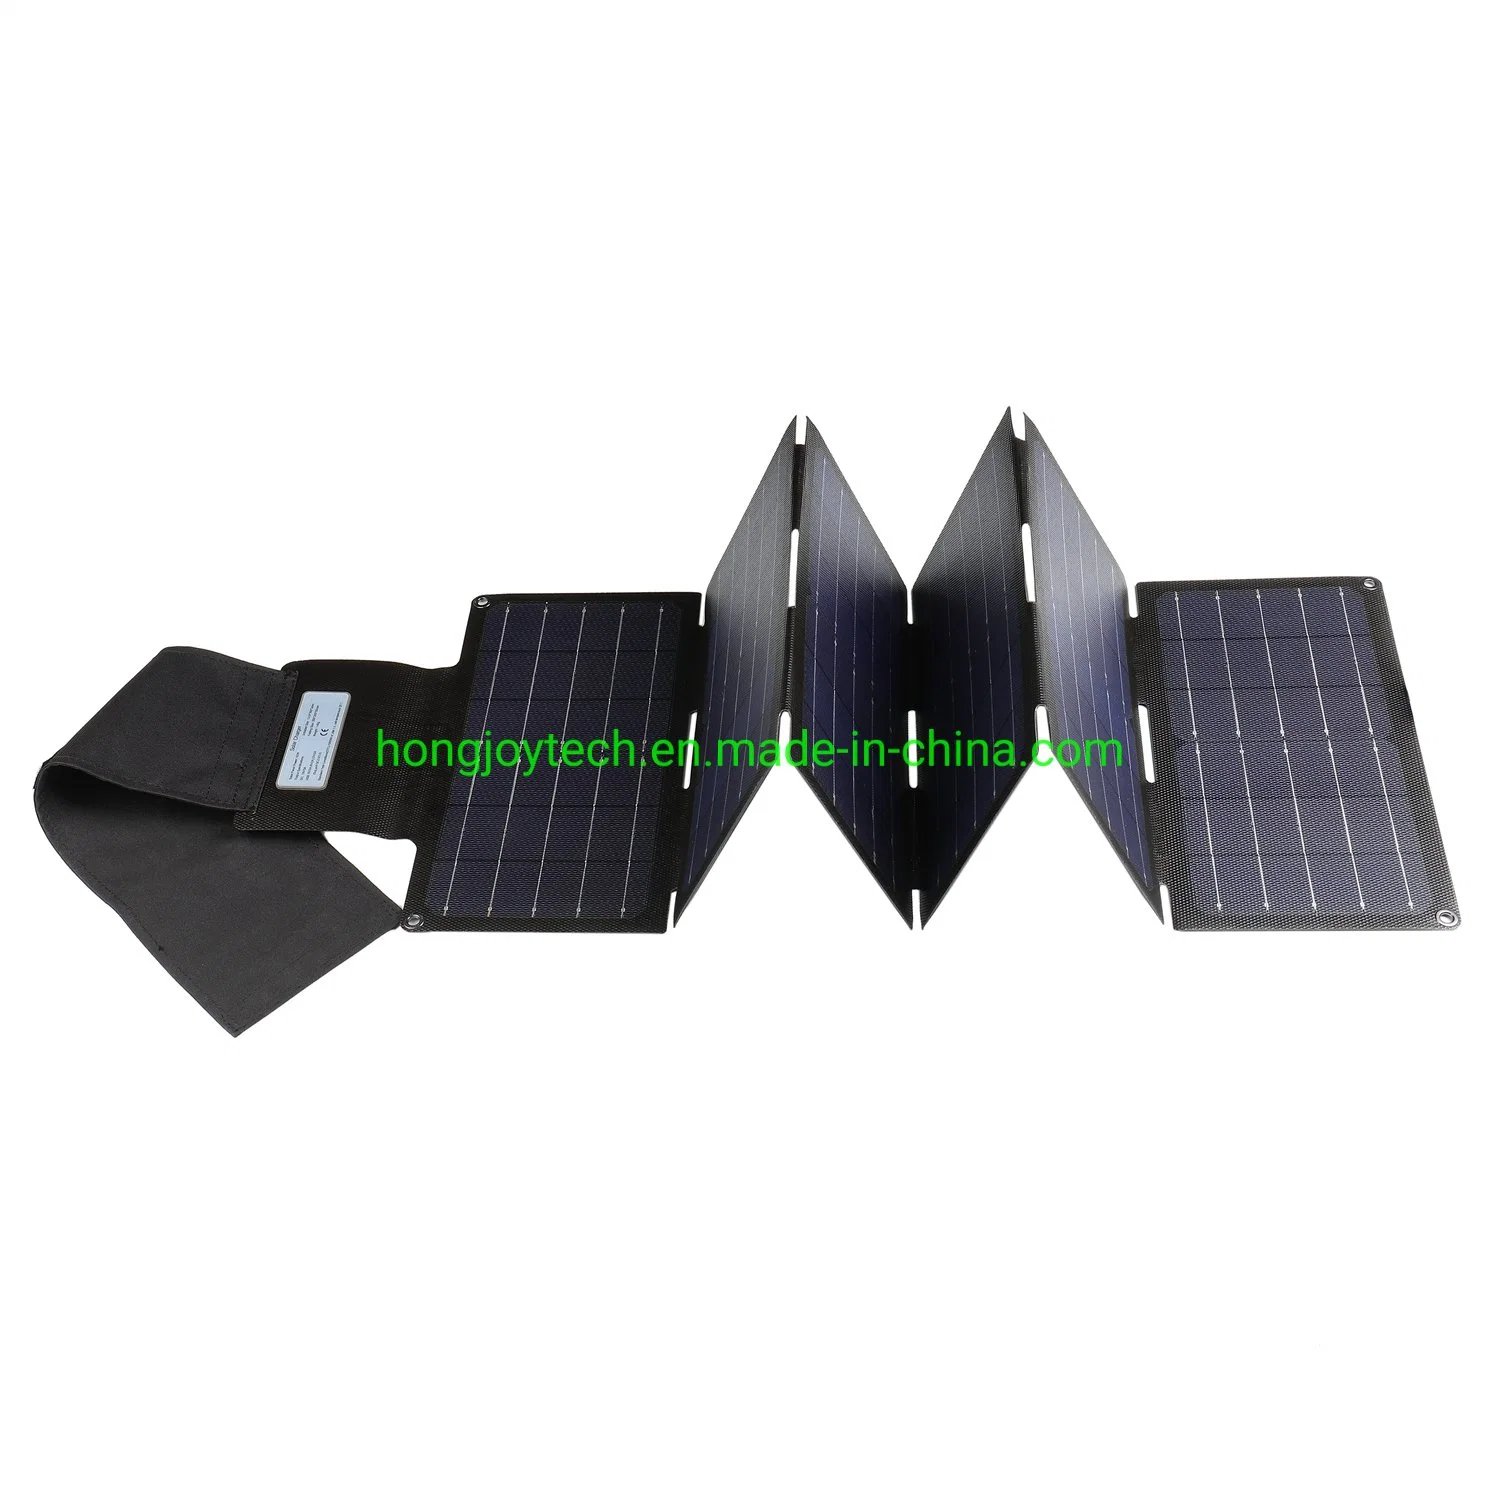 L'énergie verte en plein air en ETFE Les cellules de silicium monocristallin Module photovoltaïque pliable portable Alimentation de sauvegarde hors réseau chargeur 90W 80W 100w panneau solaire photovoltaïque de pliage